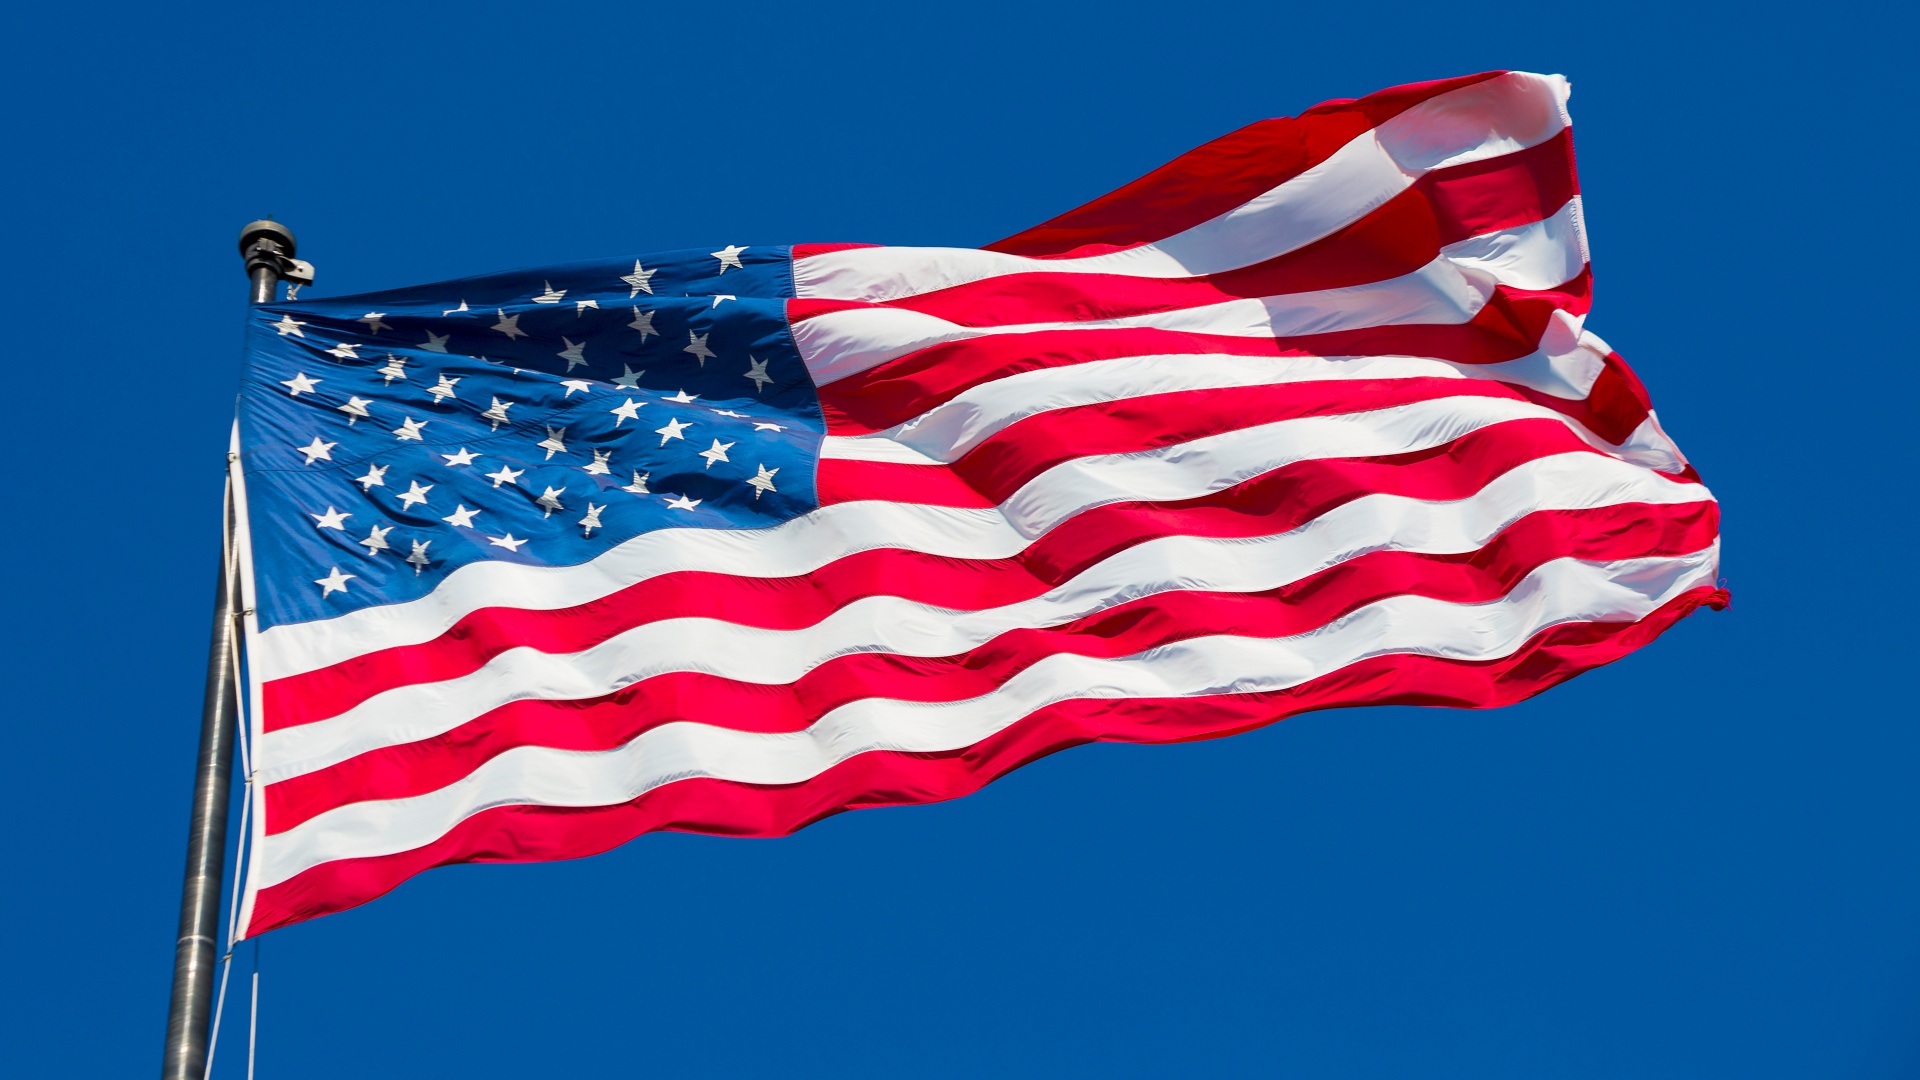 Flag of USA Wallpaper 4K, Blue Sky, American flag